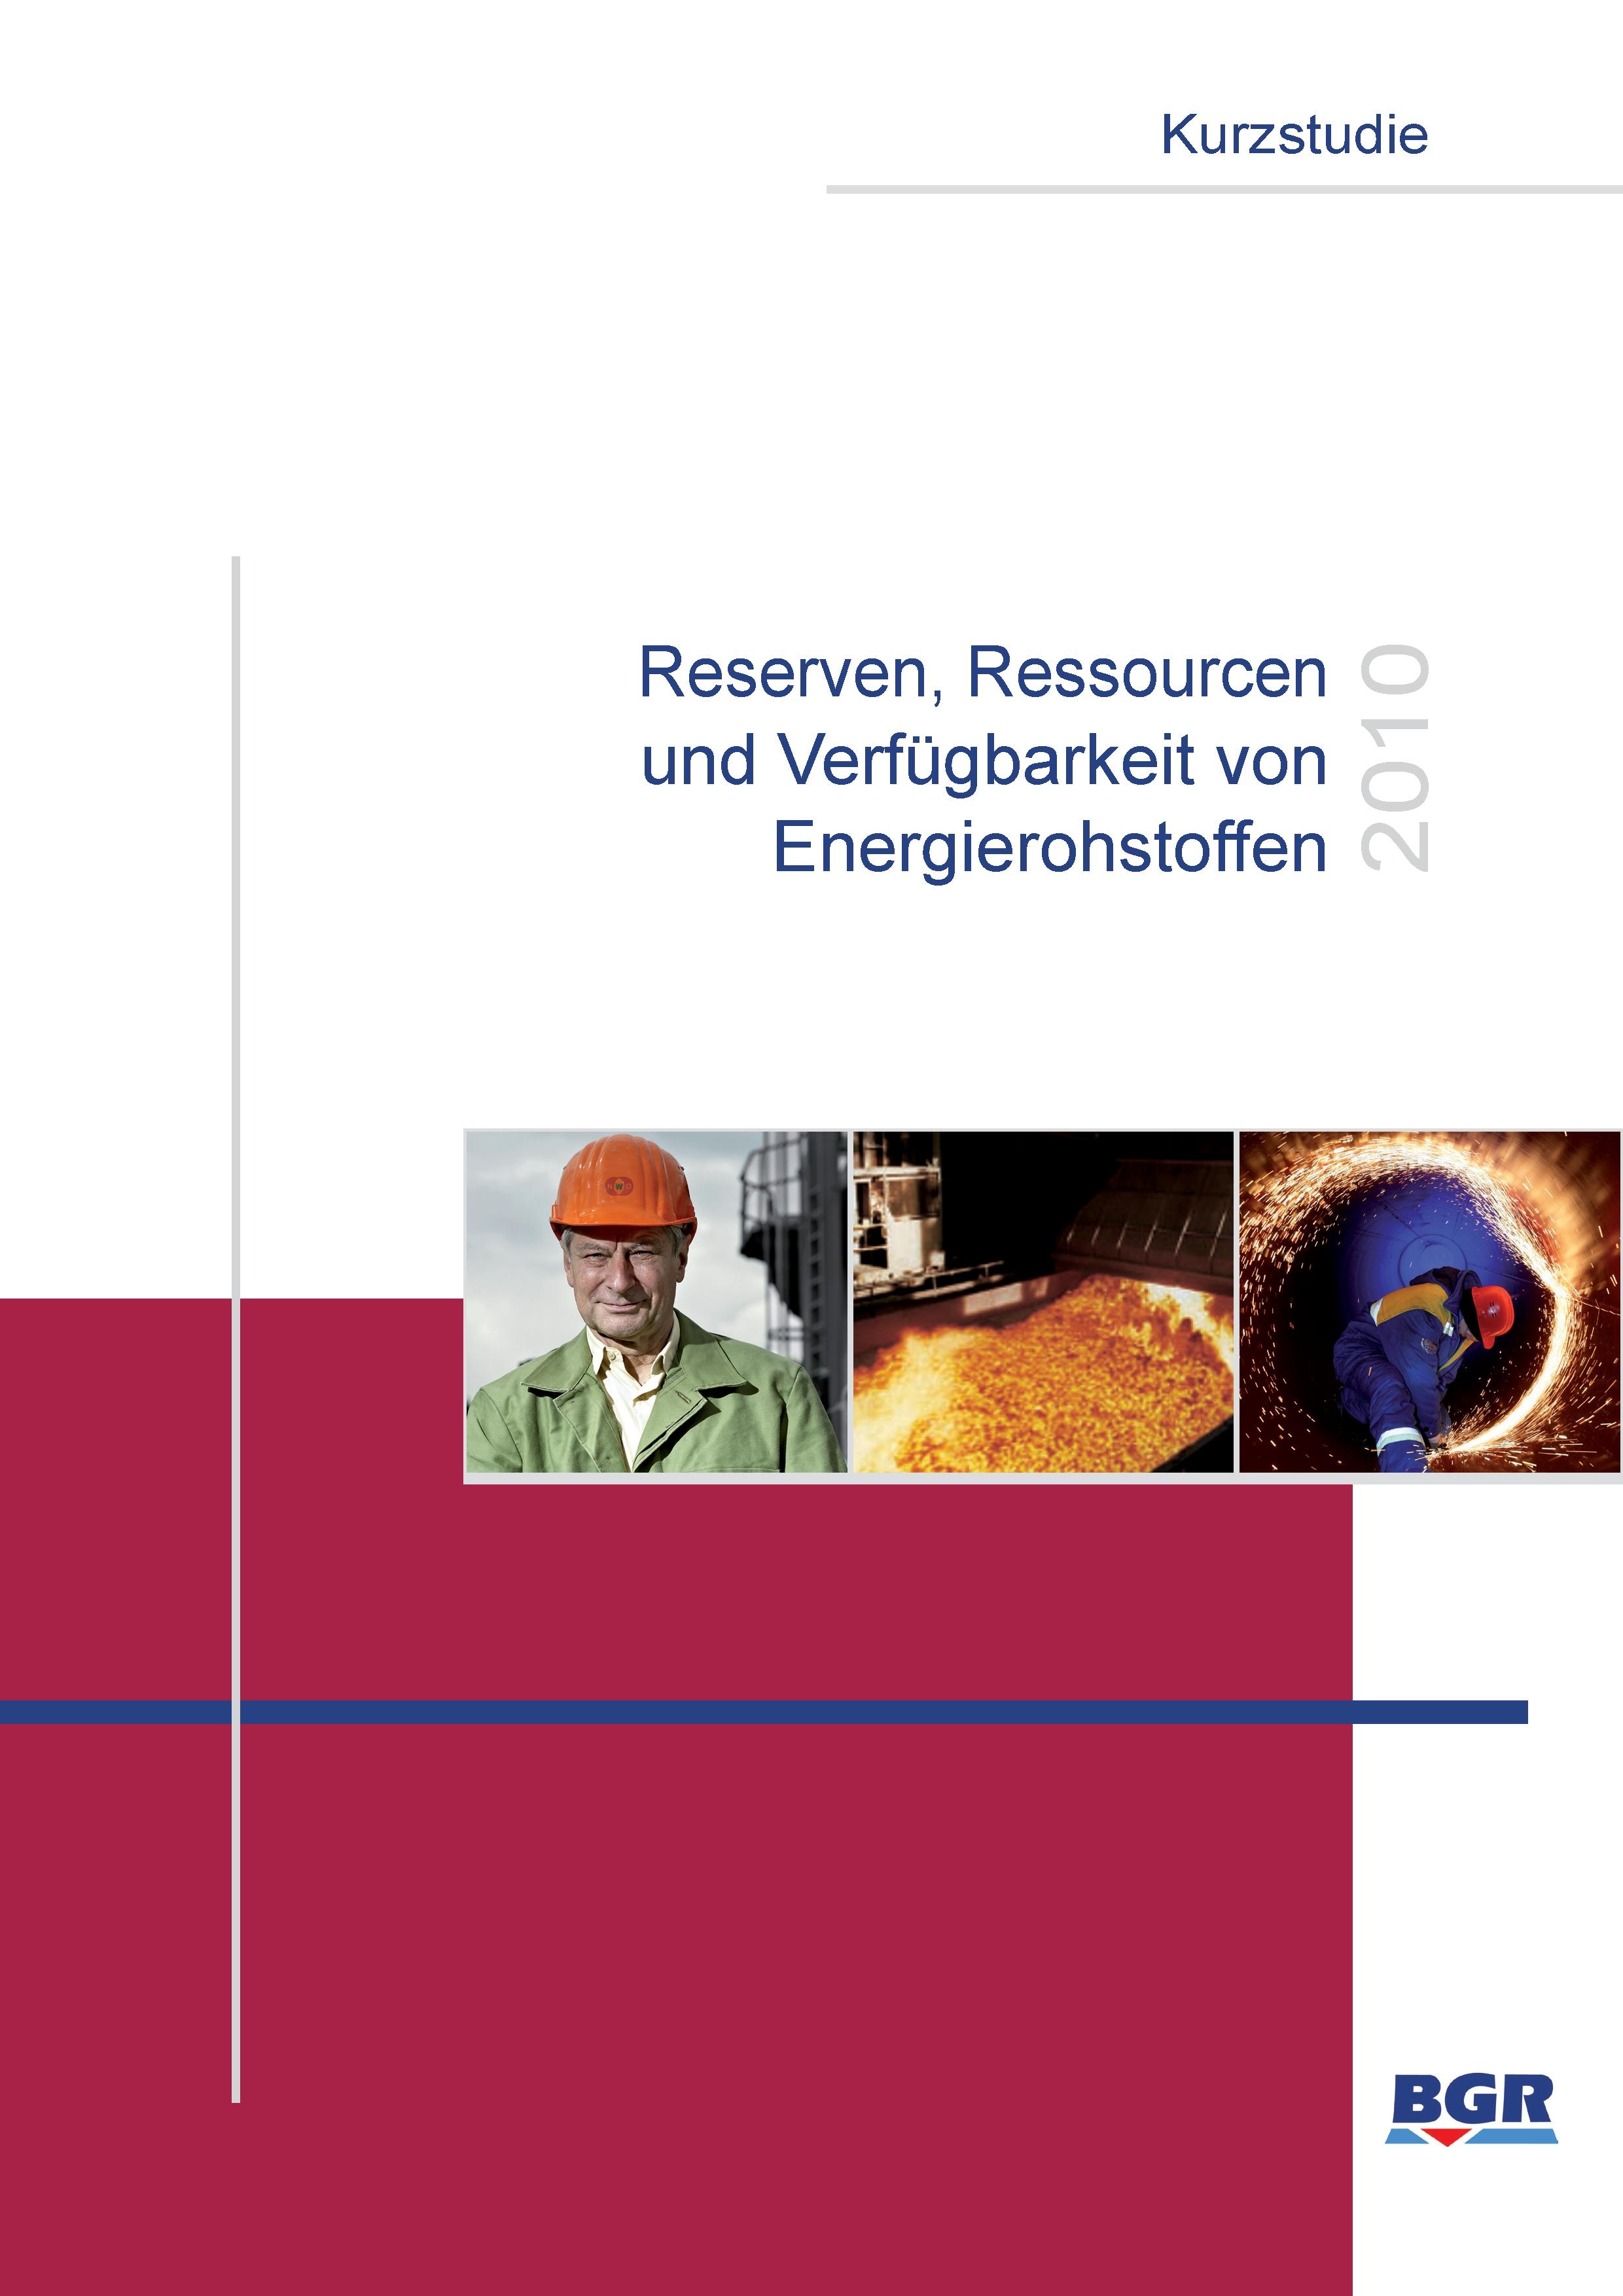 Reserven, Ressourcen und Verfügbarkeit von Energierohstoffen